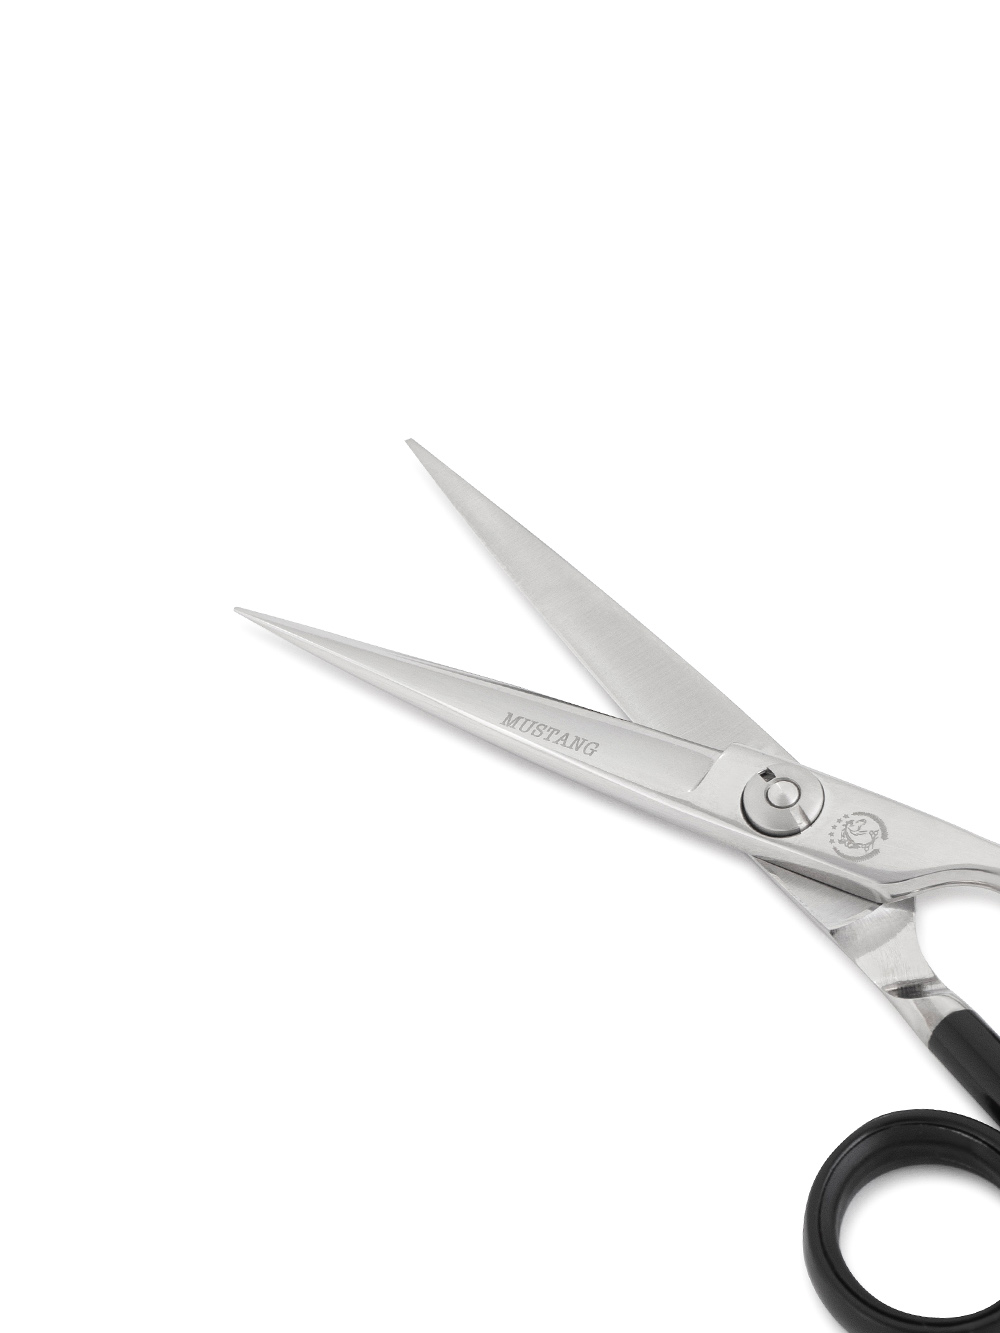 Прямые ножницы - Ножницы прямые Mustang Premium NPR-012 Черный 5,5 дюймов Фото 2